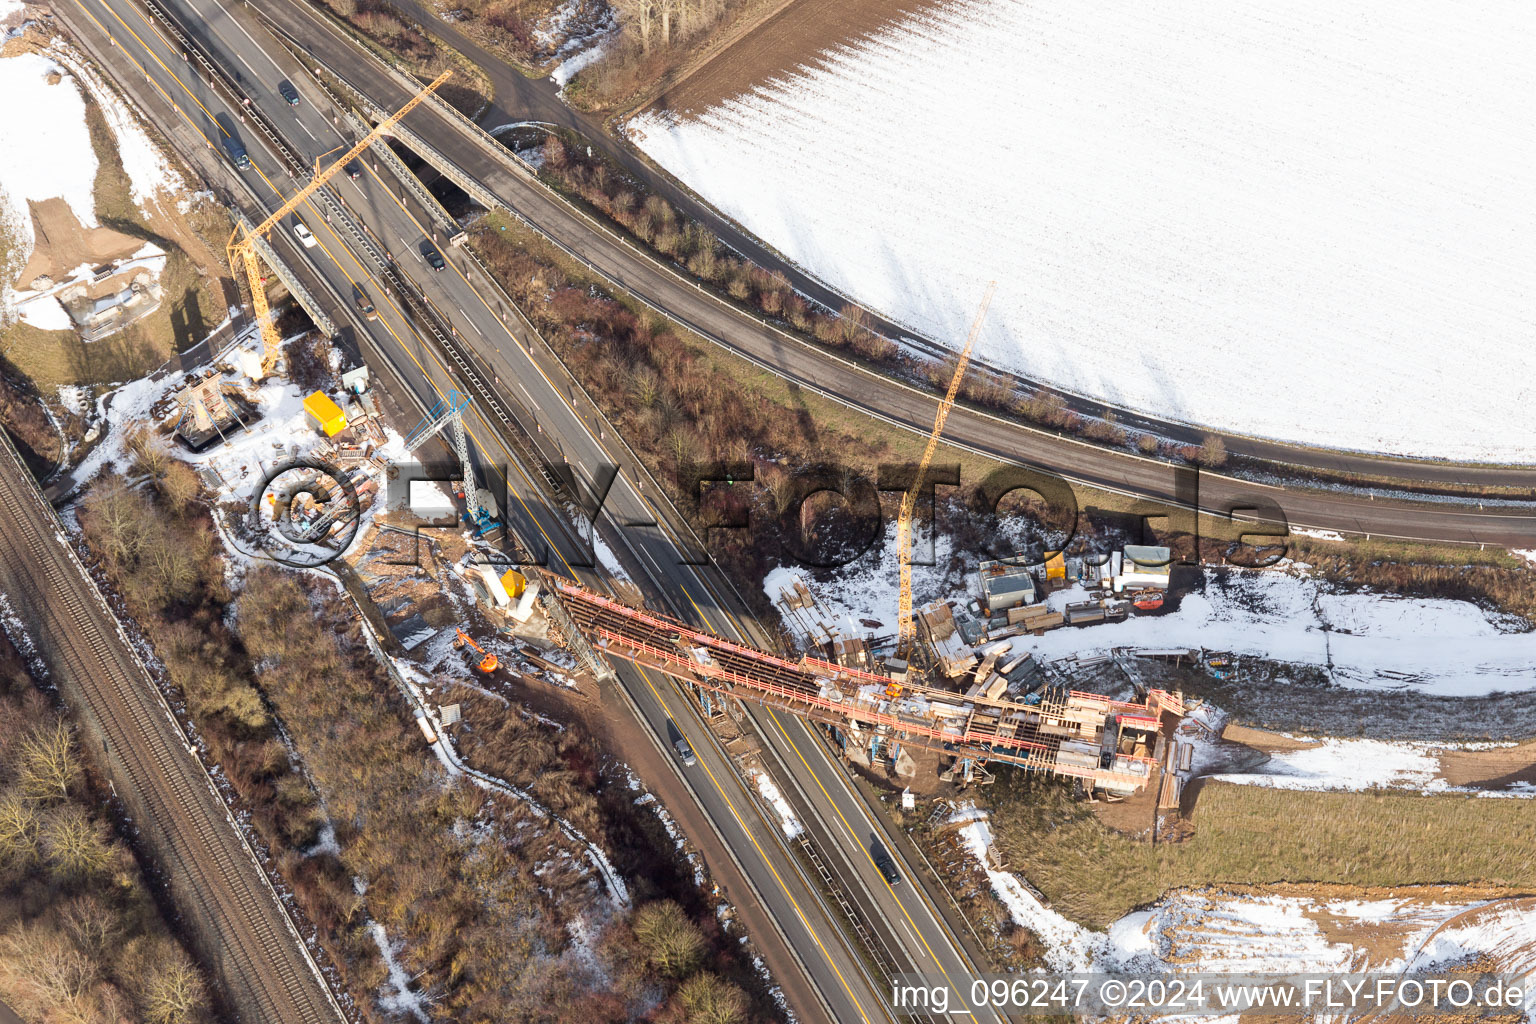 Luftbild von Baustelle zur Erweiterung der Verkehrsführung an der Autobahnabfahrt der BAB A65 in Landau in der Pfalz im Ortsteil Dammheim im Bundesland Rheinland-Pfalz, Deutschland